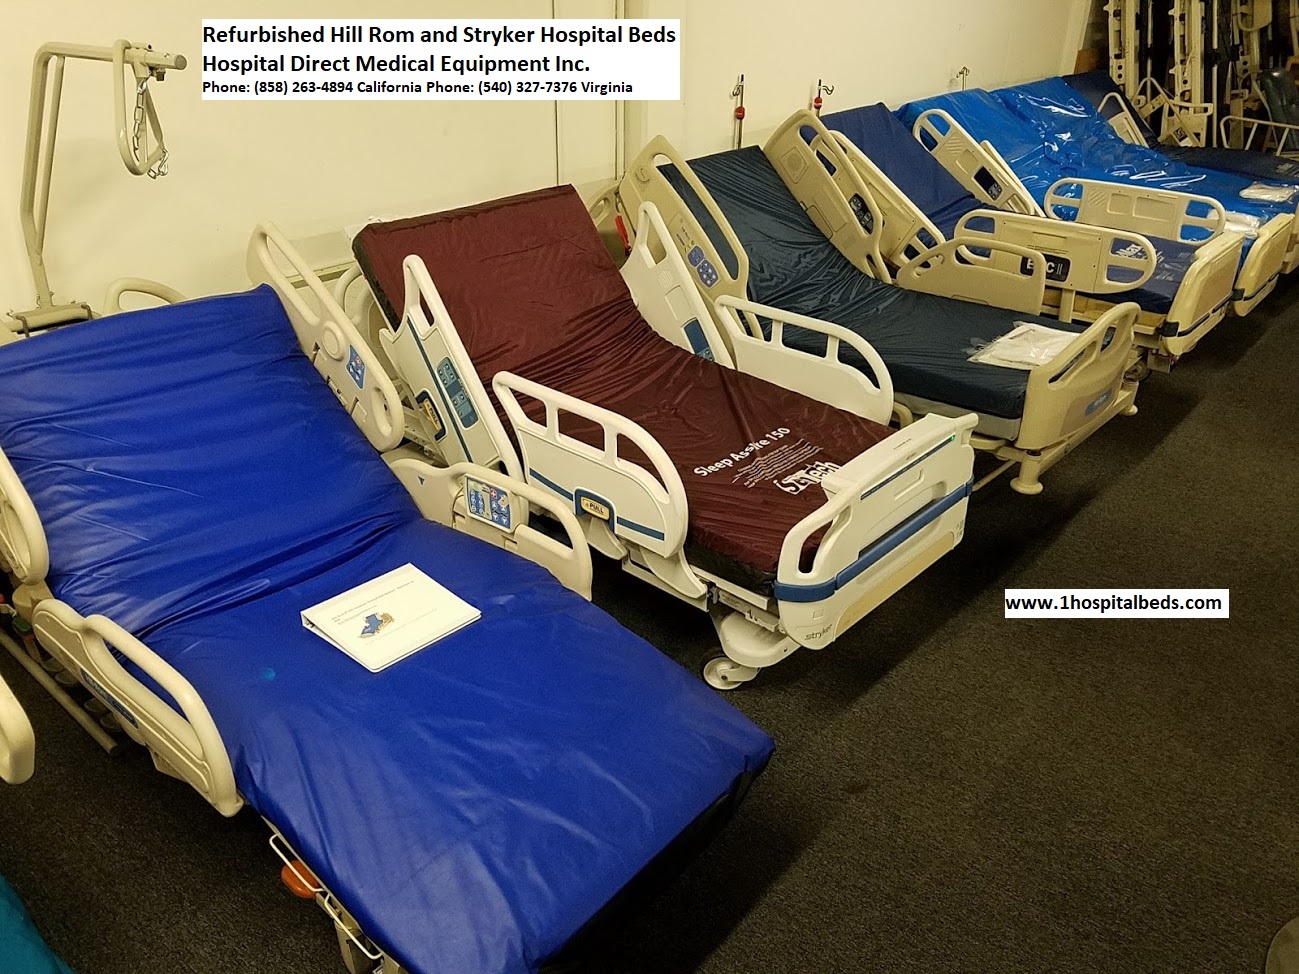 Больничная кровать hill rom